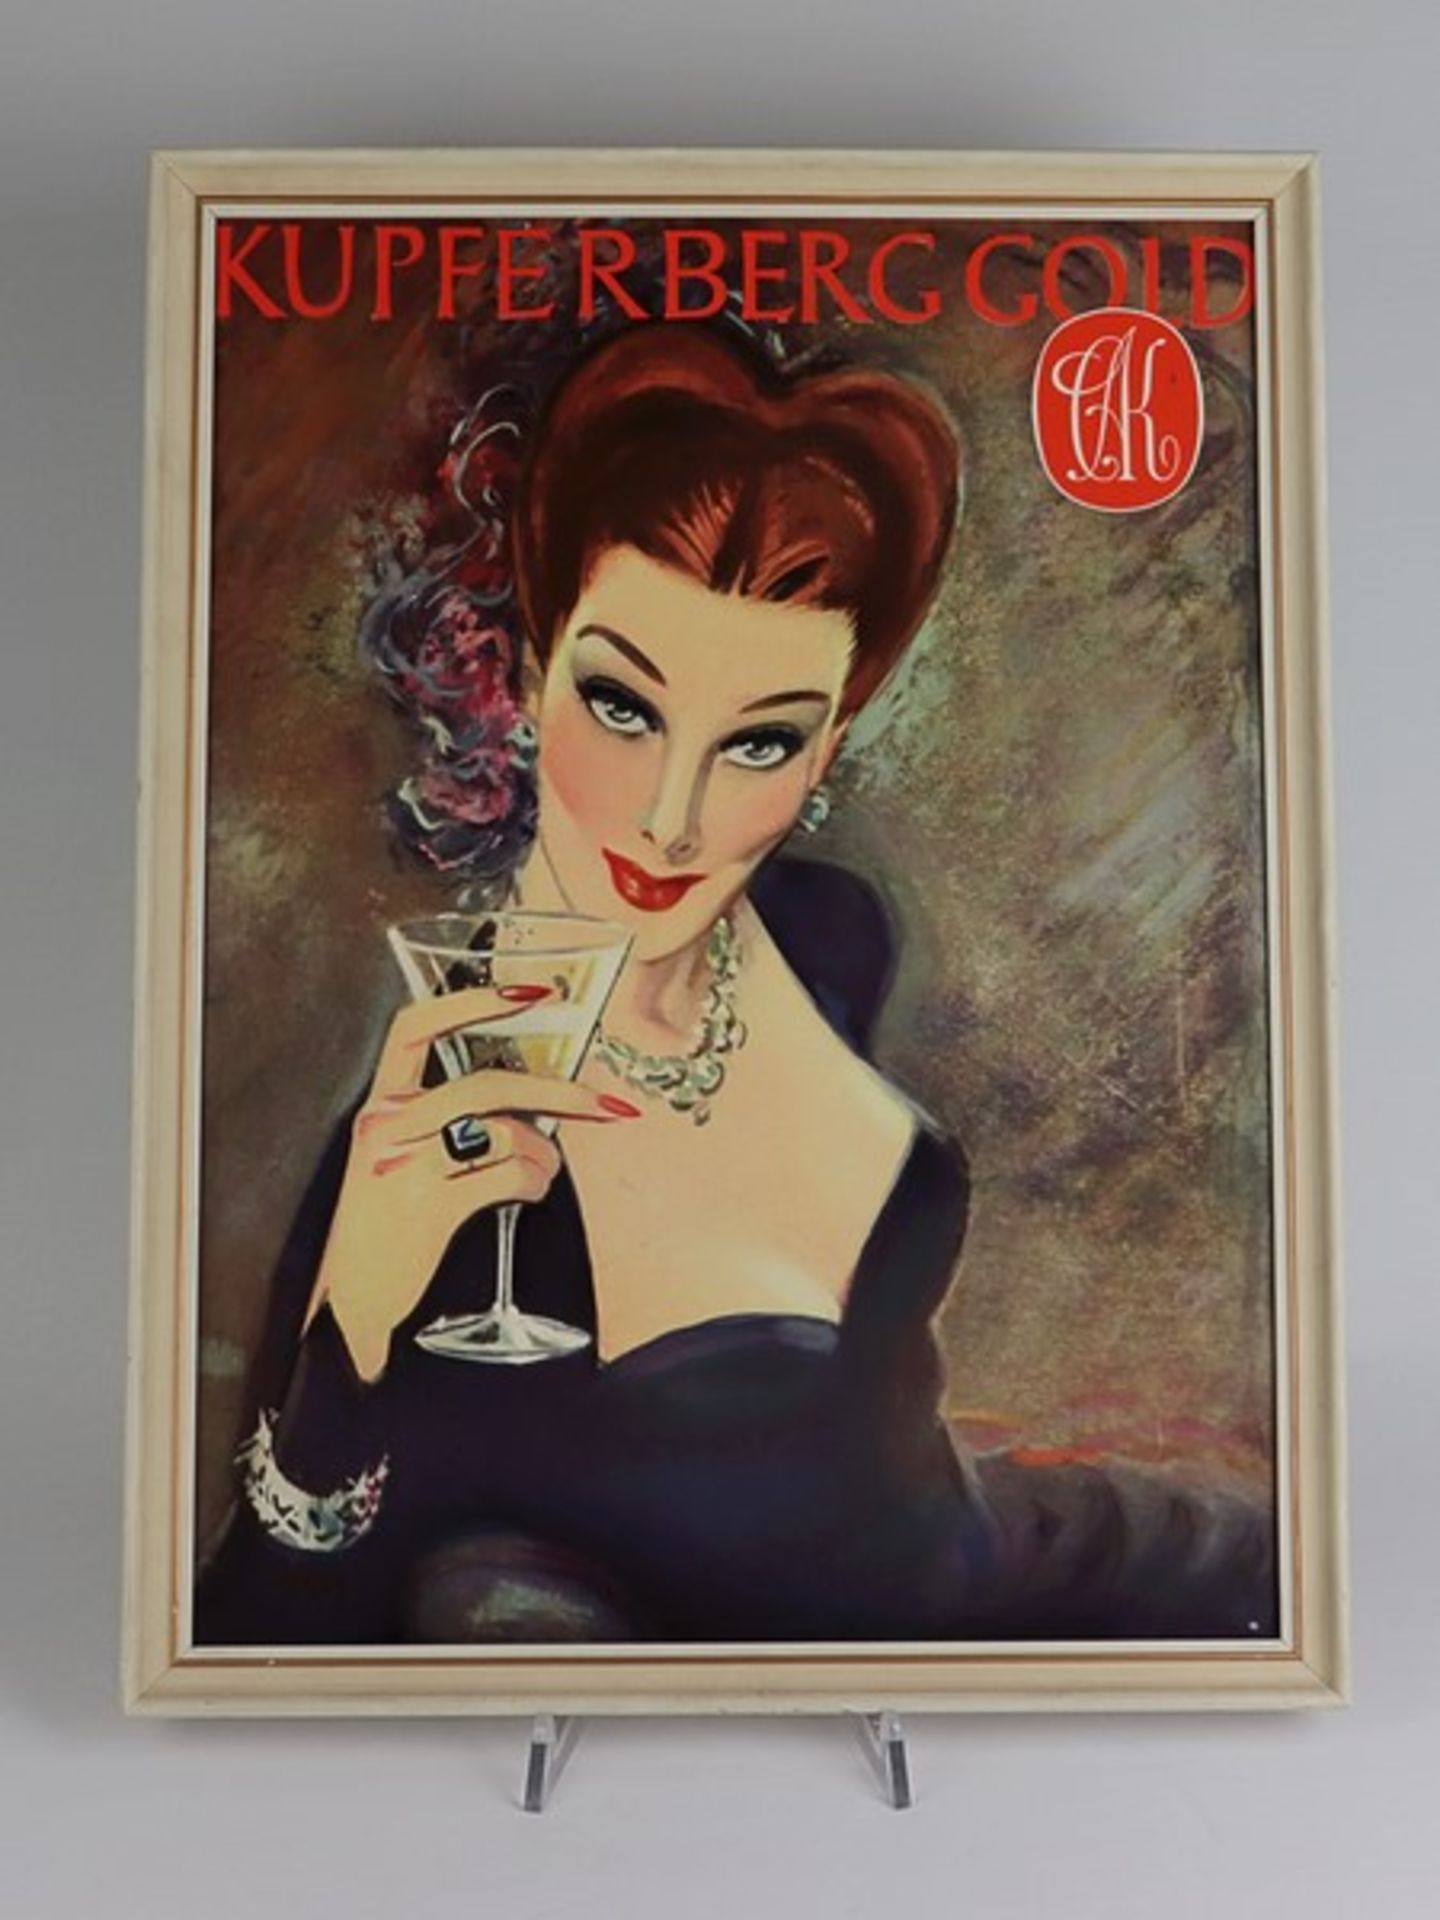 Werbung - Kupferberg Gold1950/60er Jahre, Pappe, farbig bedruckt, gerahmt, Rahmen außen ca. 46 x